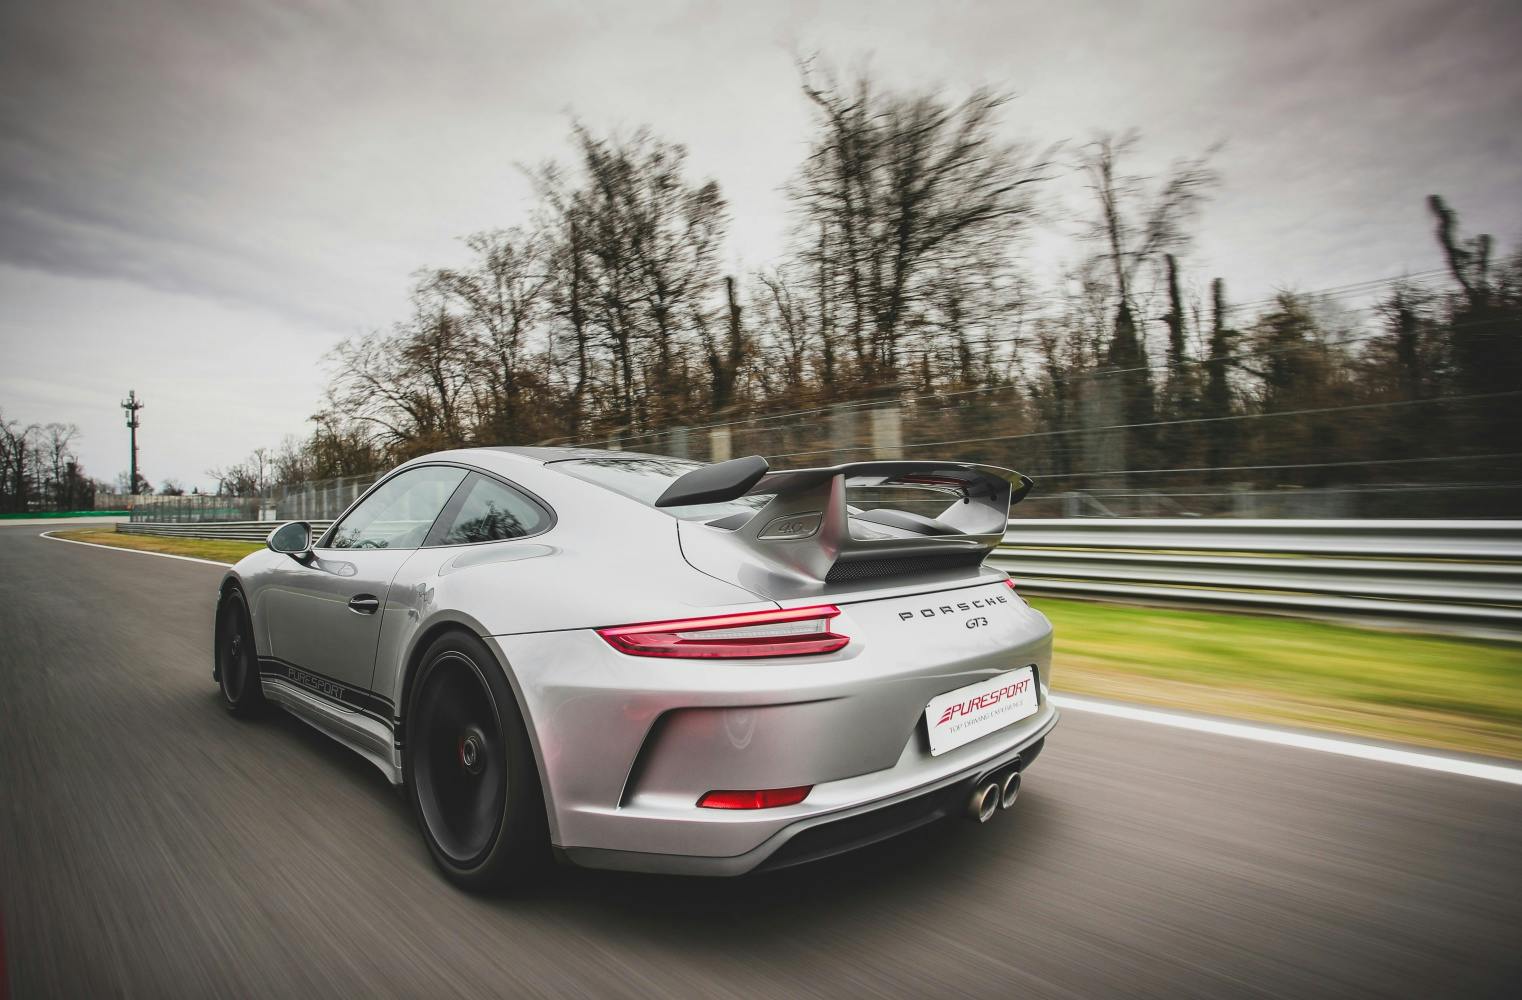 Porsche 911 GT3 fahren | eine Runde auf der Rennstrecke